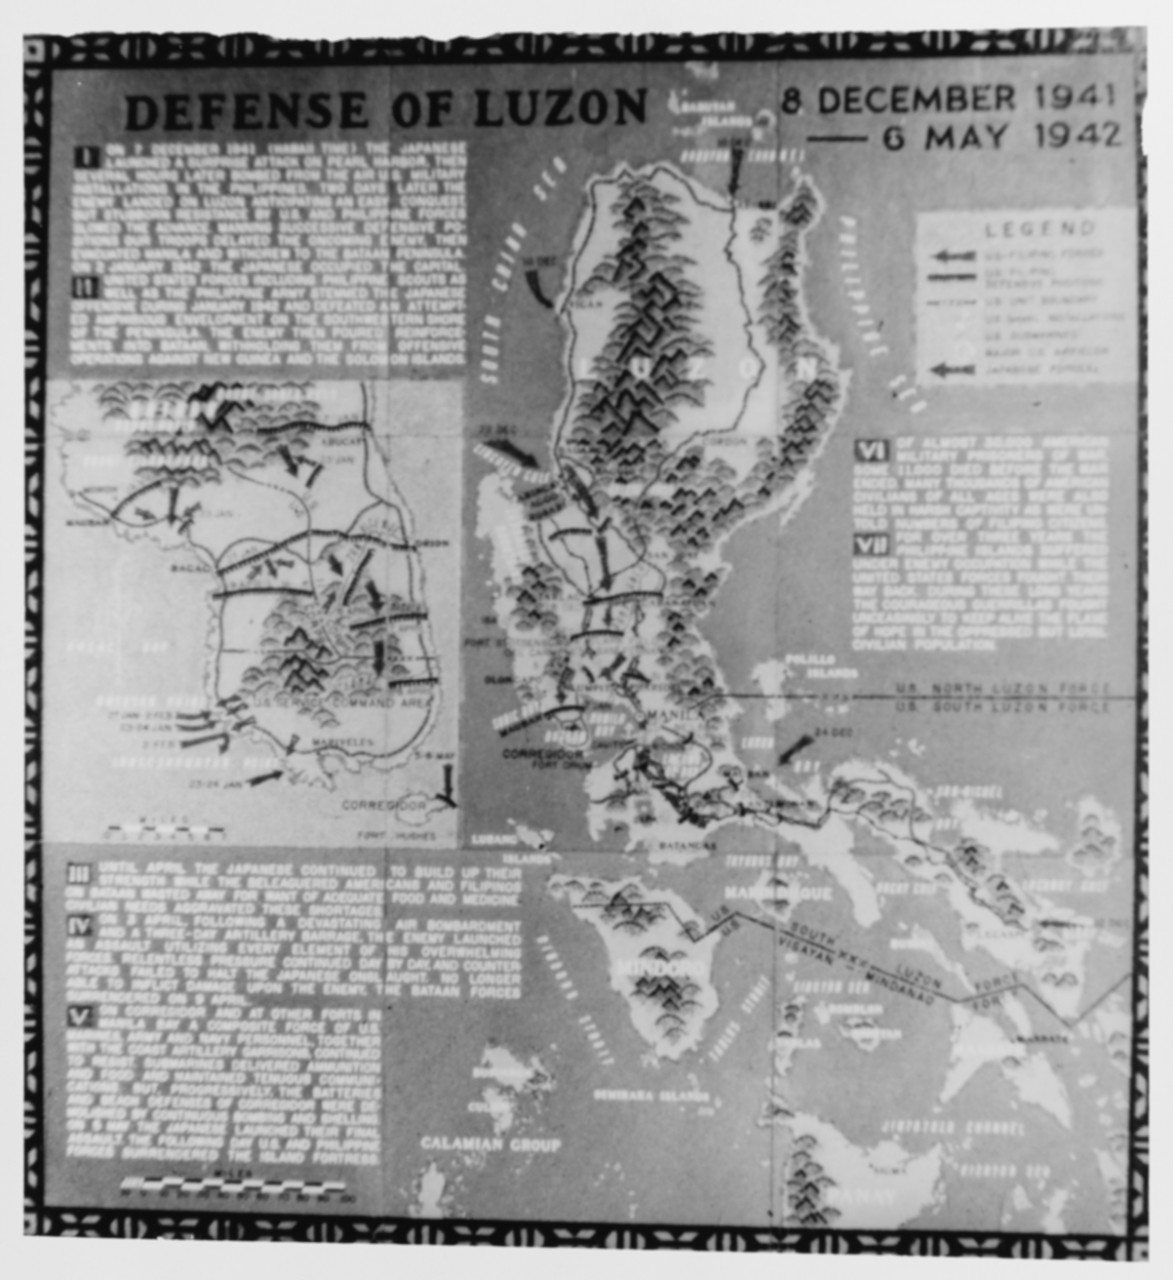 Defense of Luzon -- World War II Battle Chart 8 December 1941 - 6 May 1942